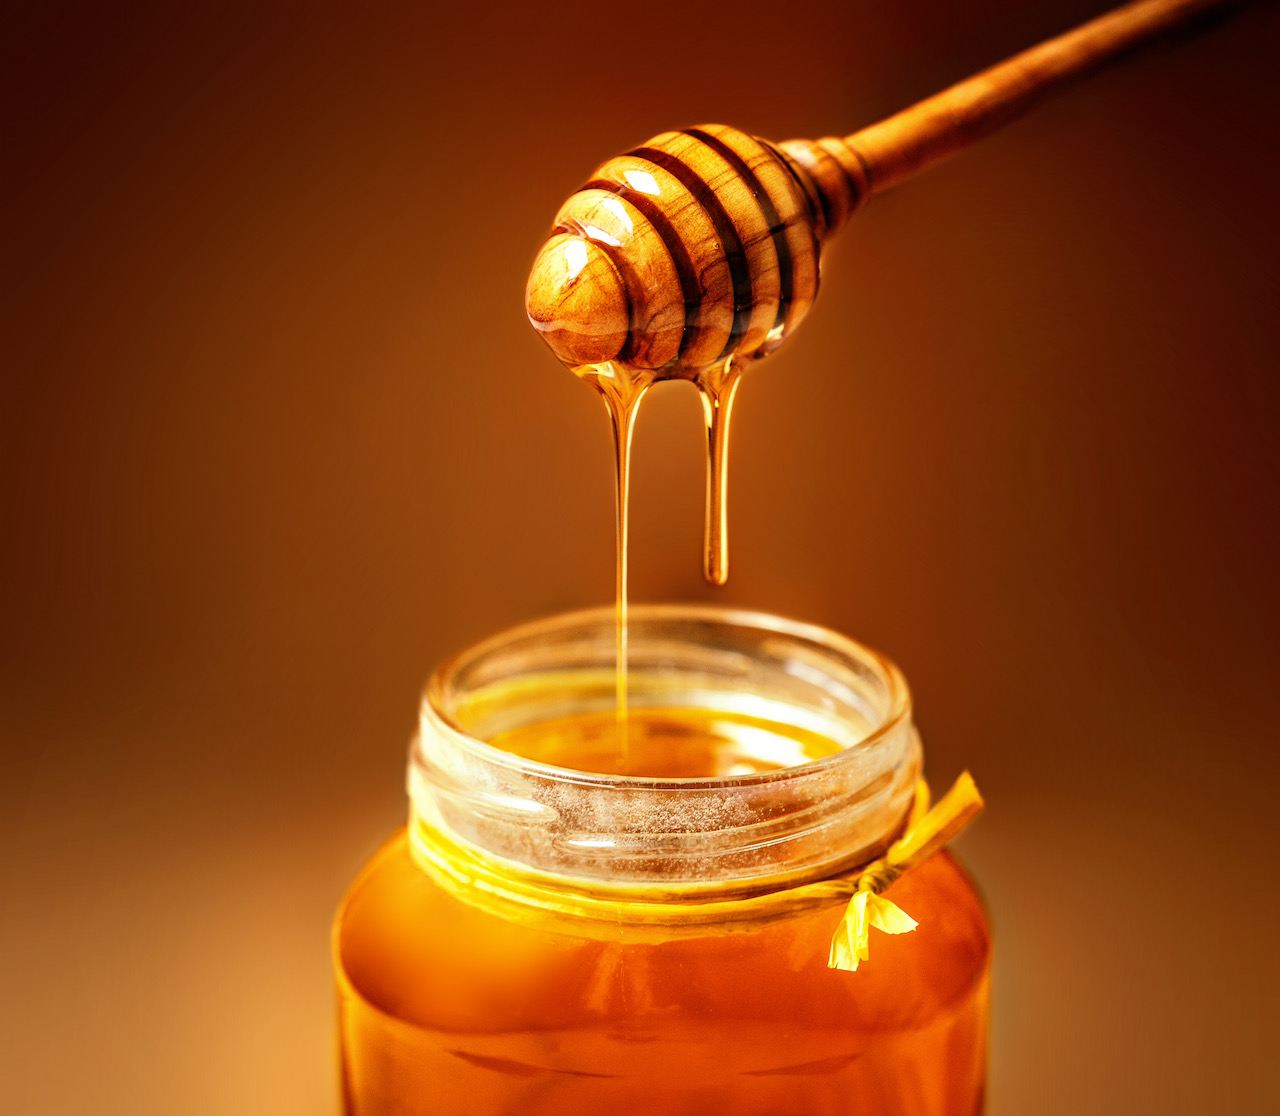 Tarro de miel importado